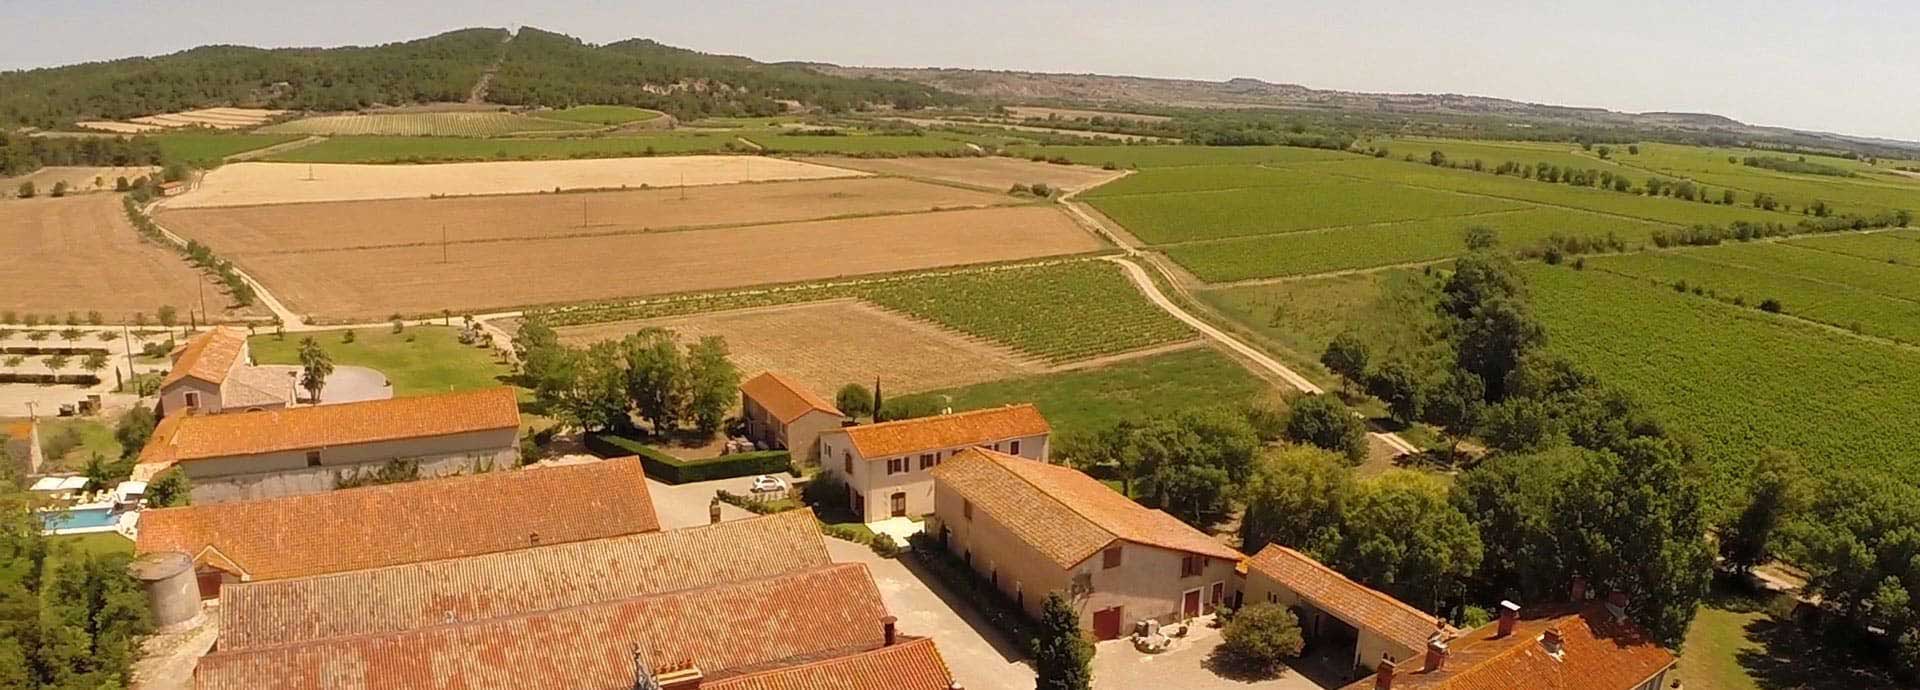 Vista aérea de la Finca de la Vernède, alquiler de casas rurales en el departamento de Hérault